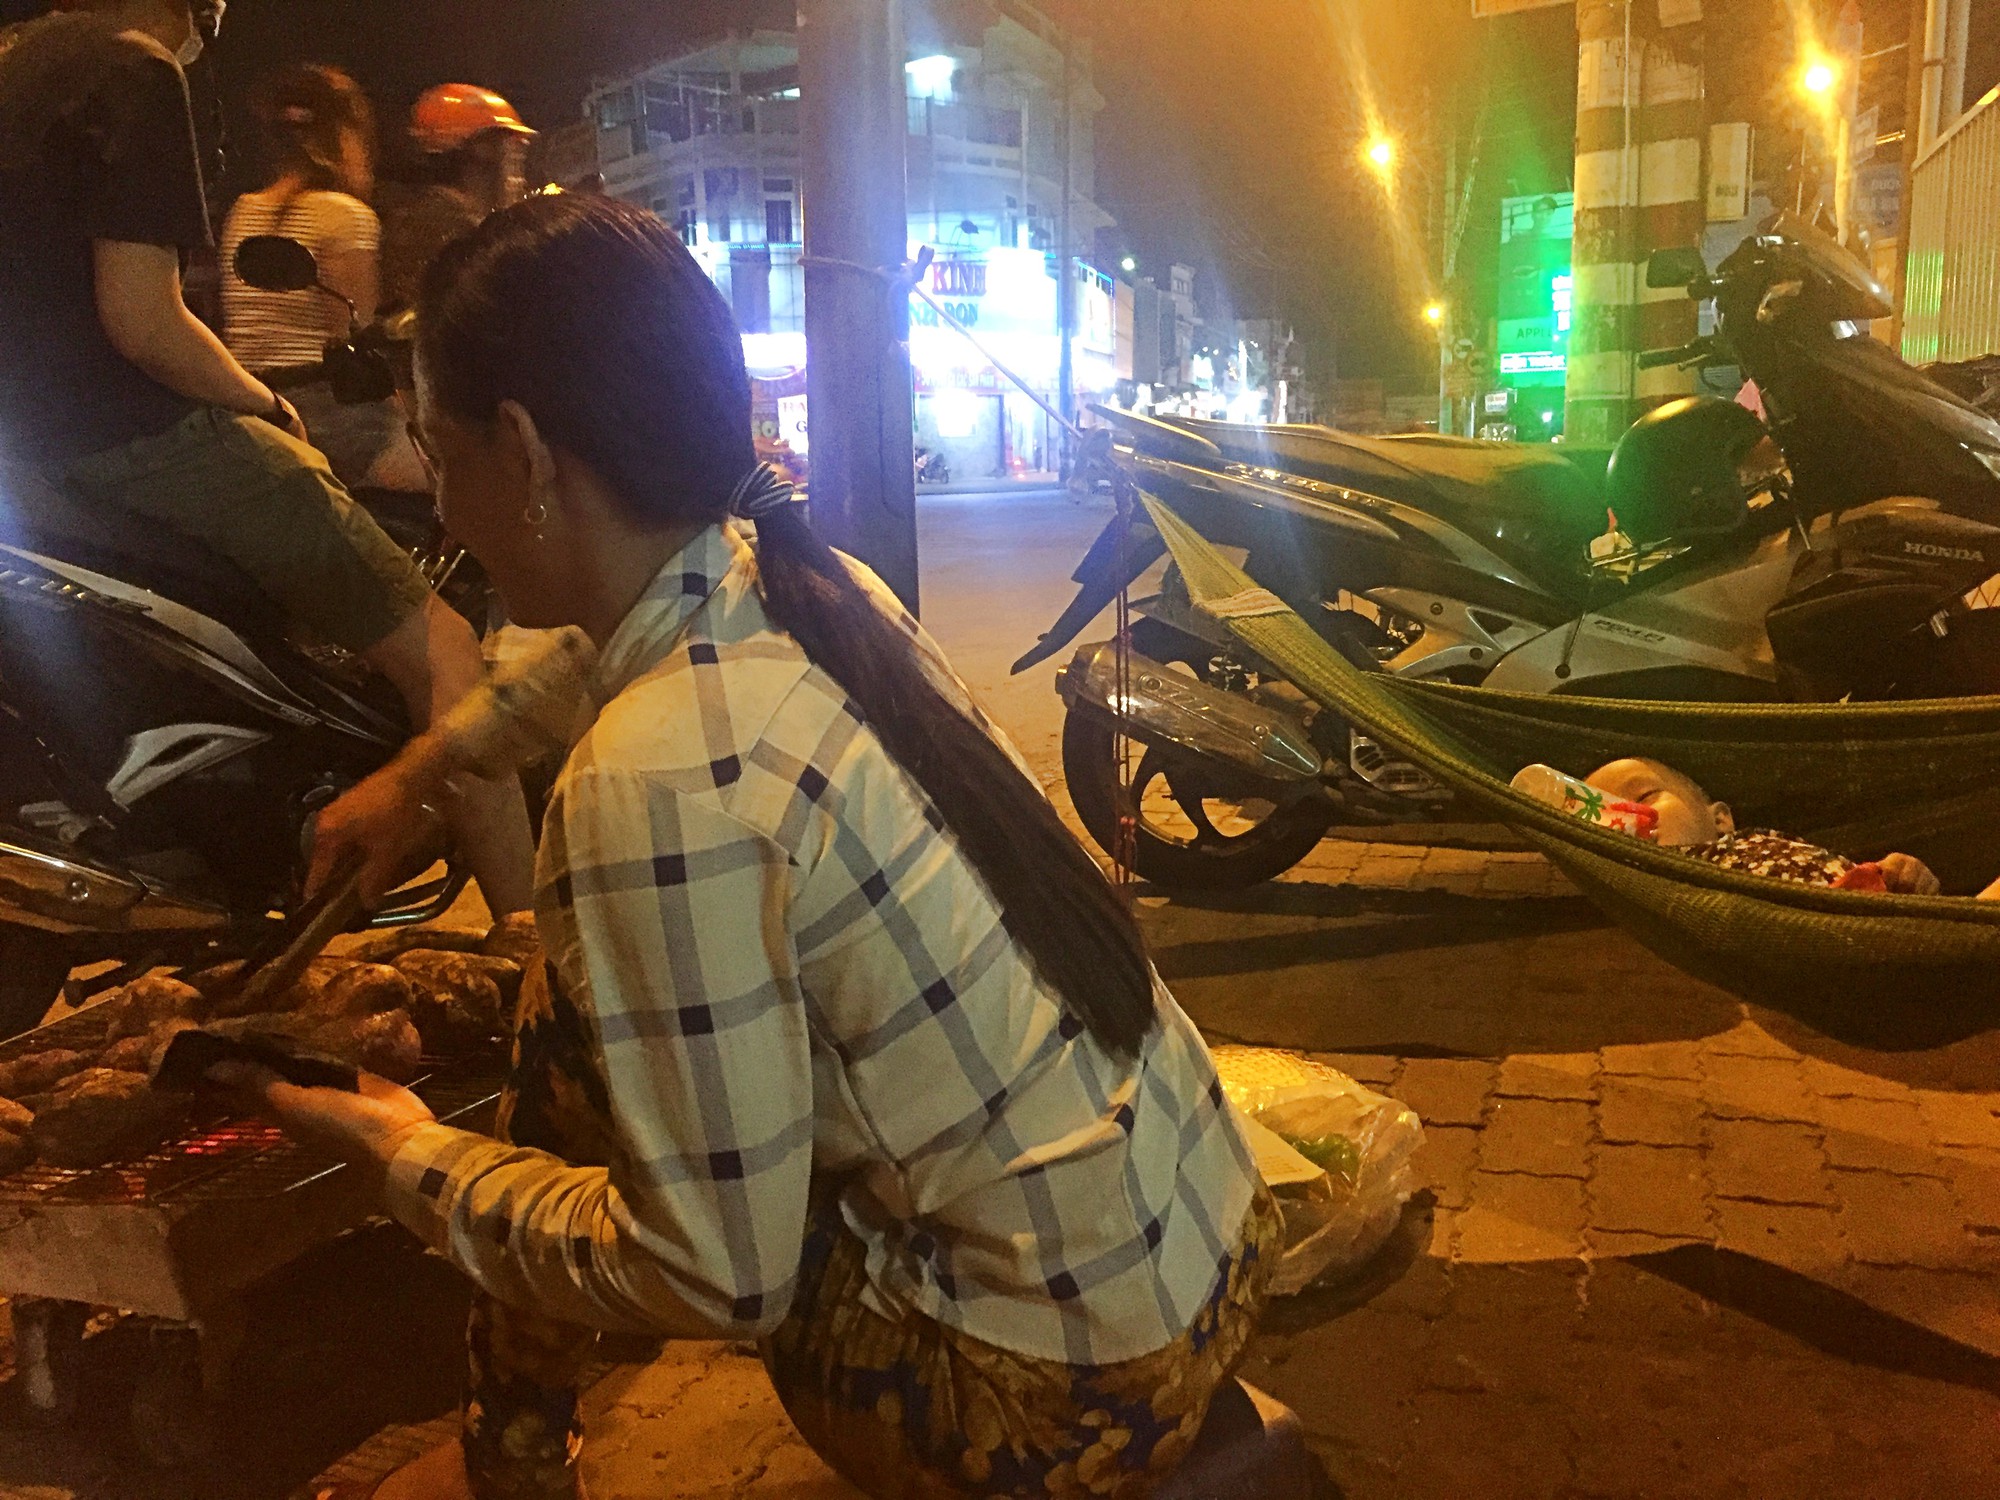 Phía sau hình ảnh 2 chiếc võng đong đưa bên lò khoai nướng của người mẹ nghèo ở Sài Gòn - Ảnh 1.